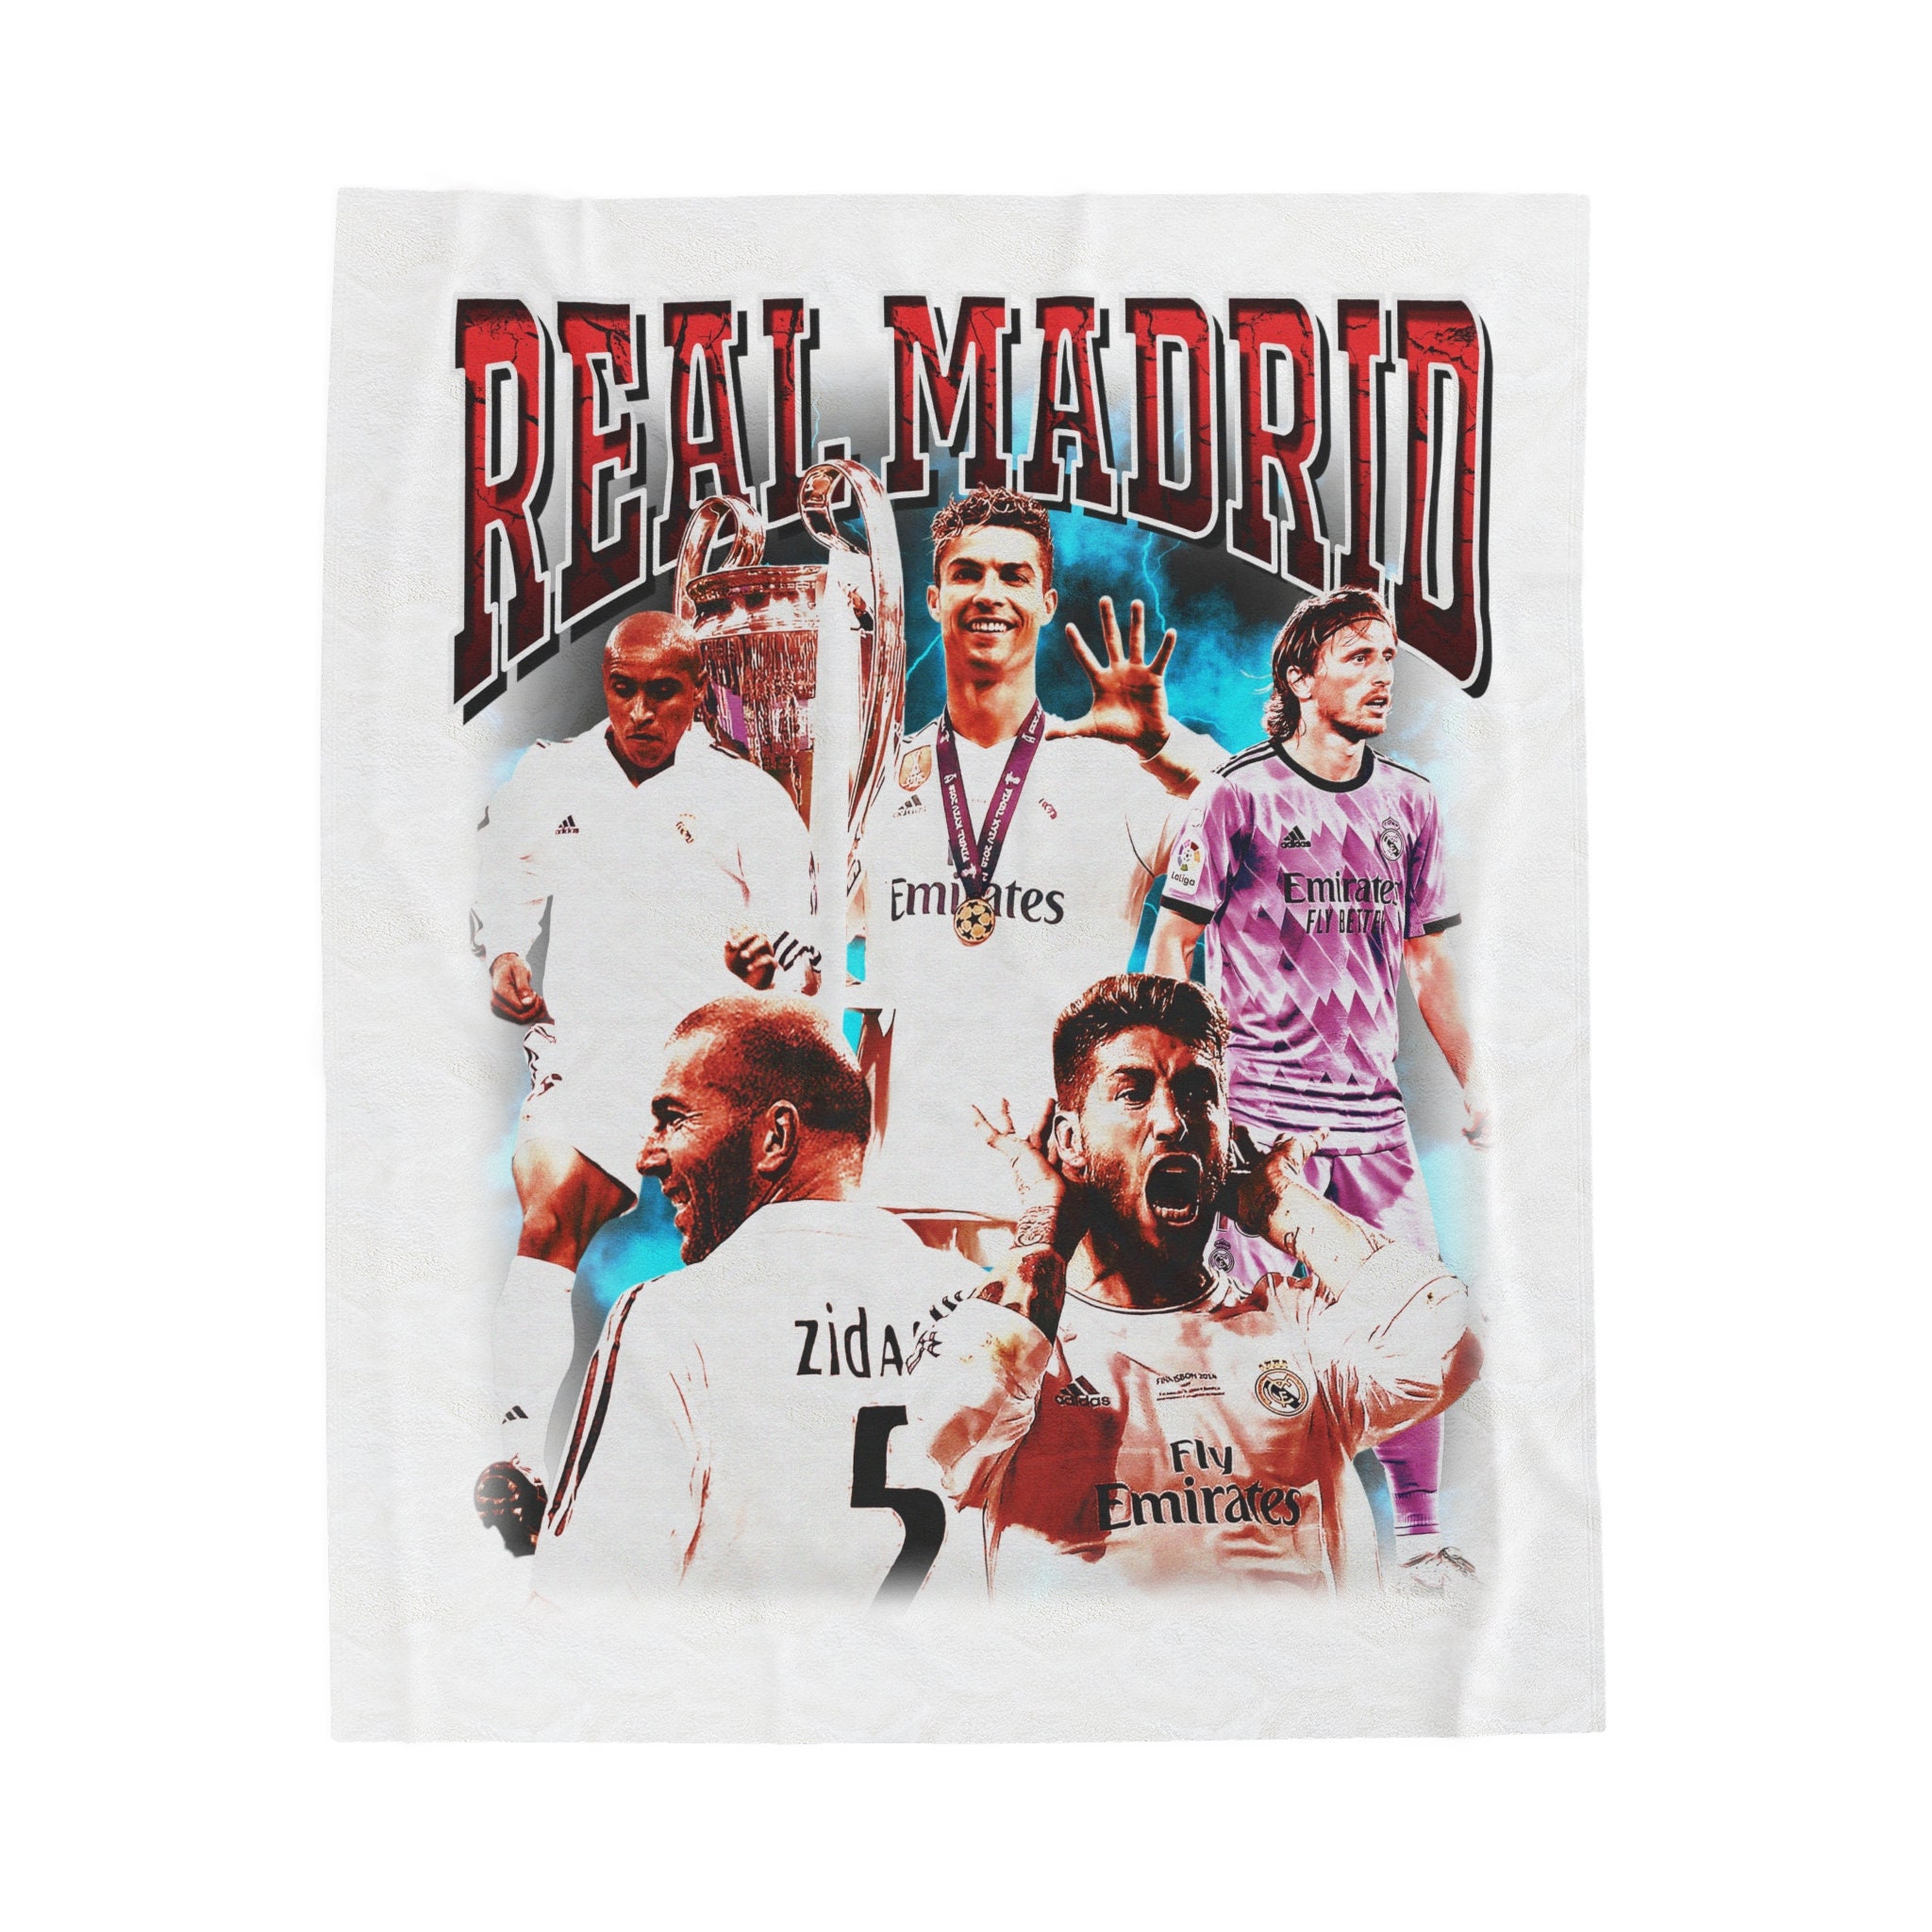 manta Real Madrid  Manualidades, Mantas, Real madrid